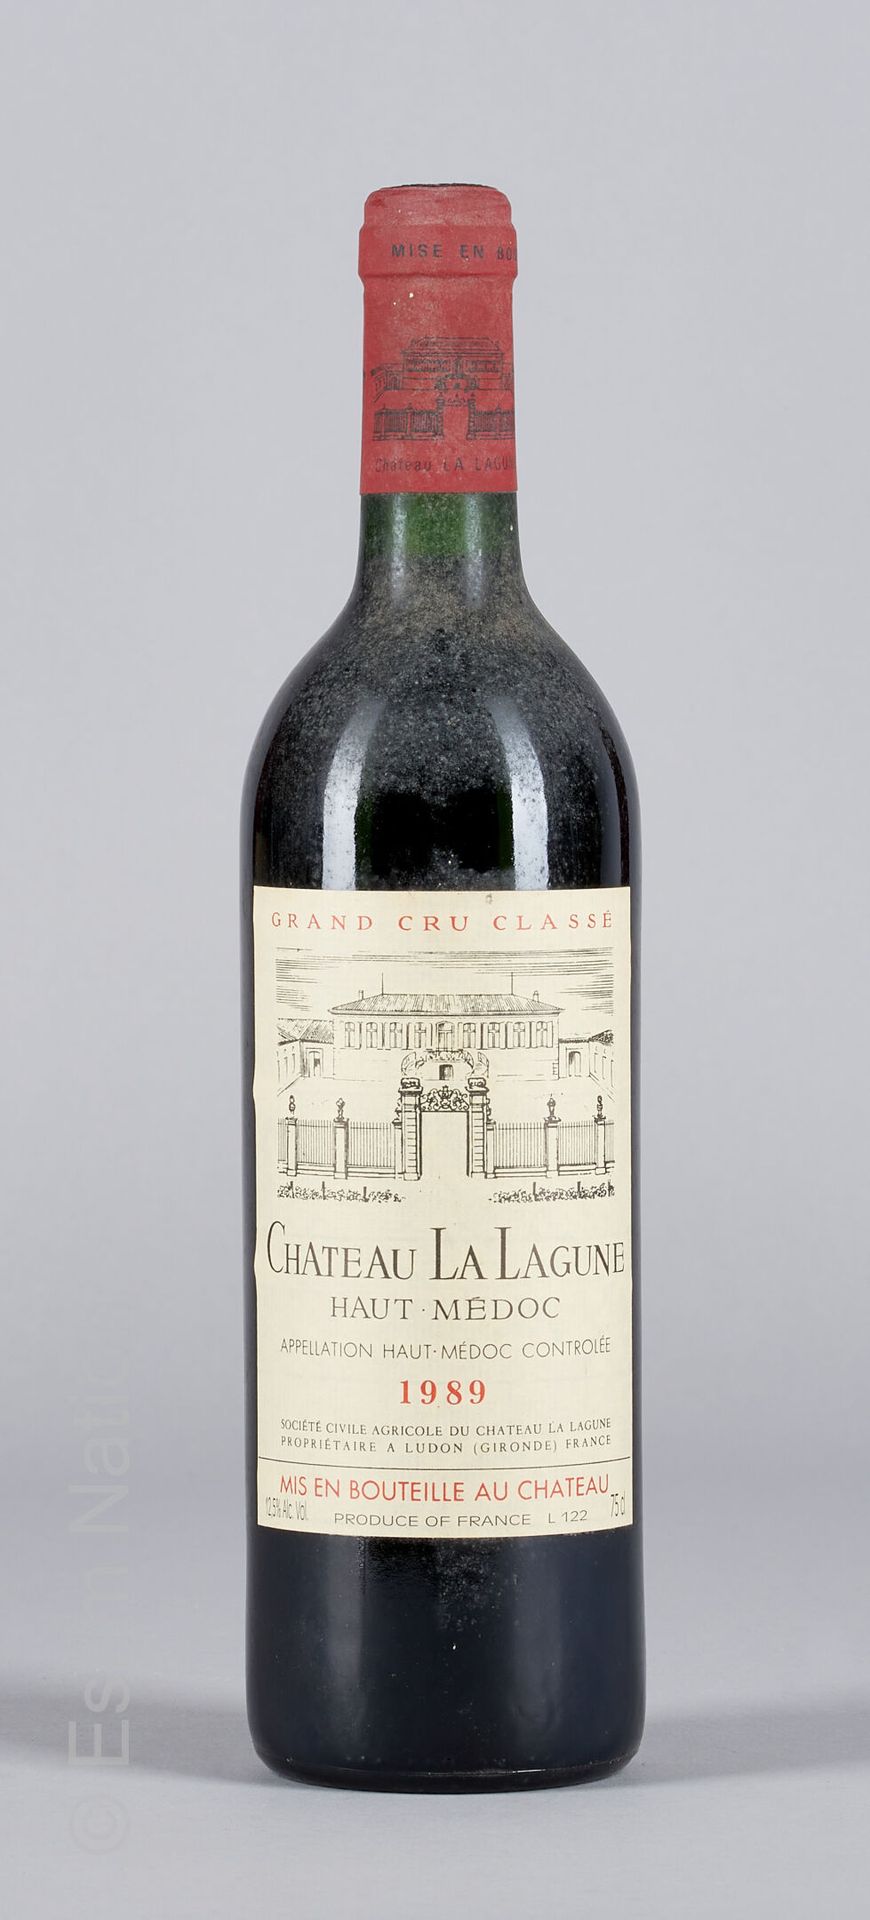 BORDEAUX 1 botella Château La Lagune 1986 3ª GC Haut-Médoc

(E. F, tlm)